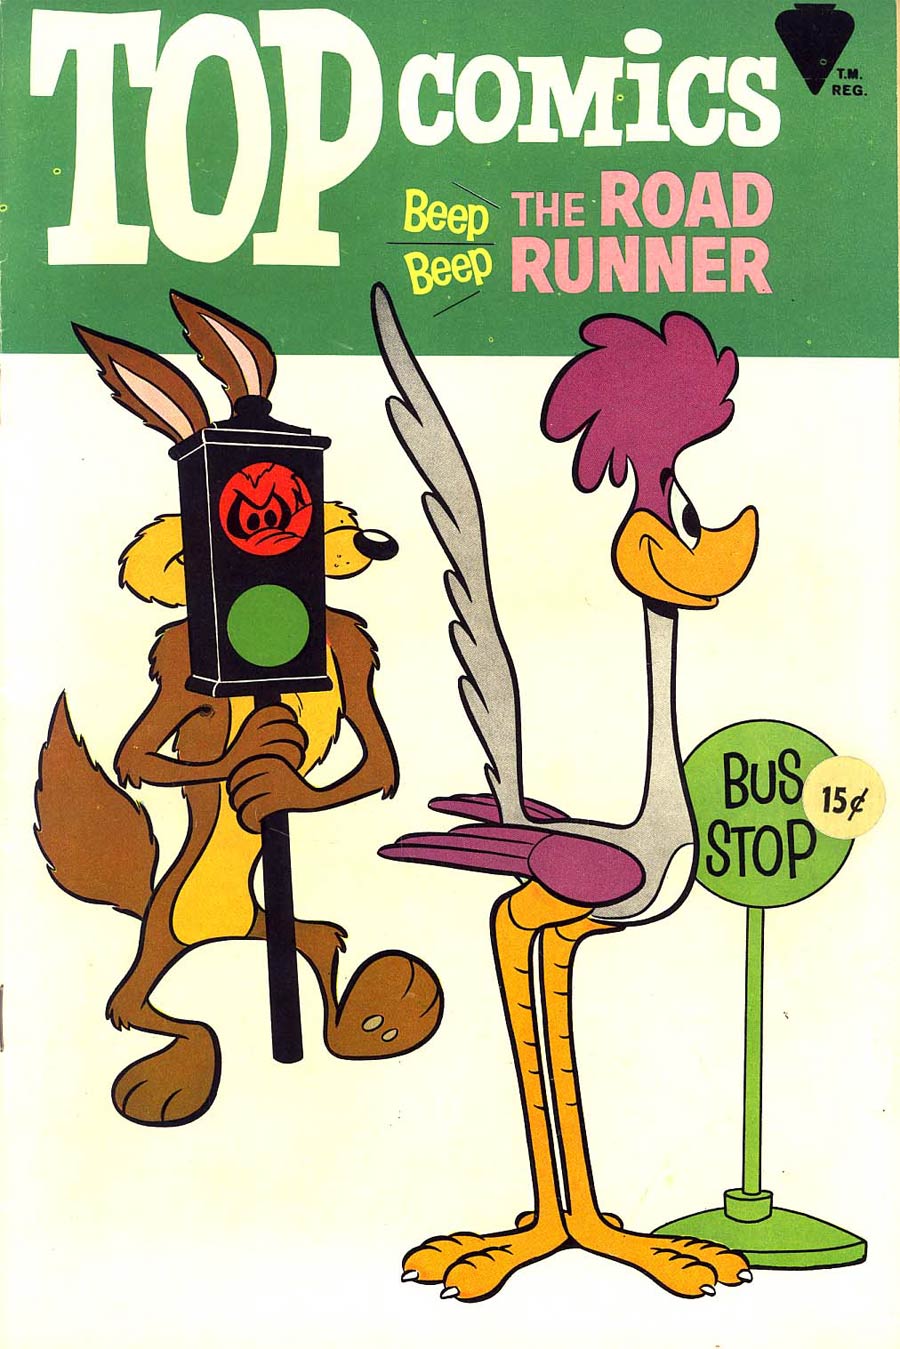 Top Comics #1 Beep Beep The Road Runner